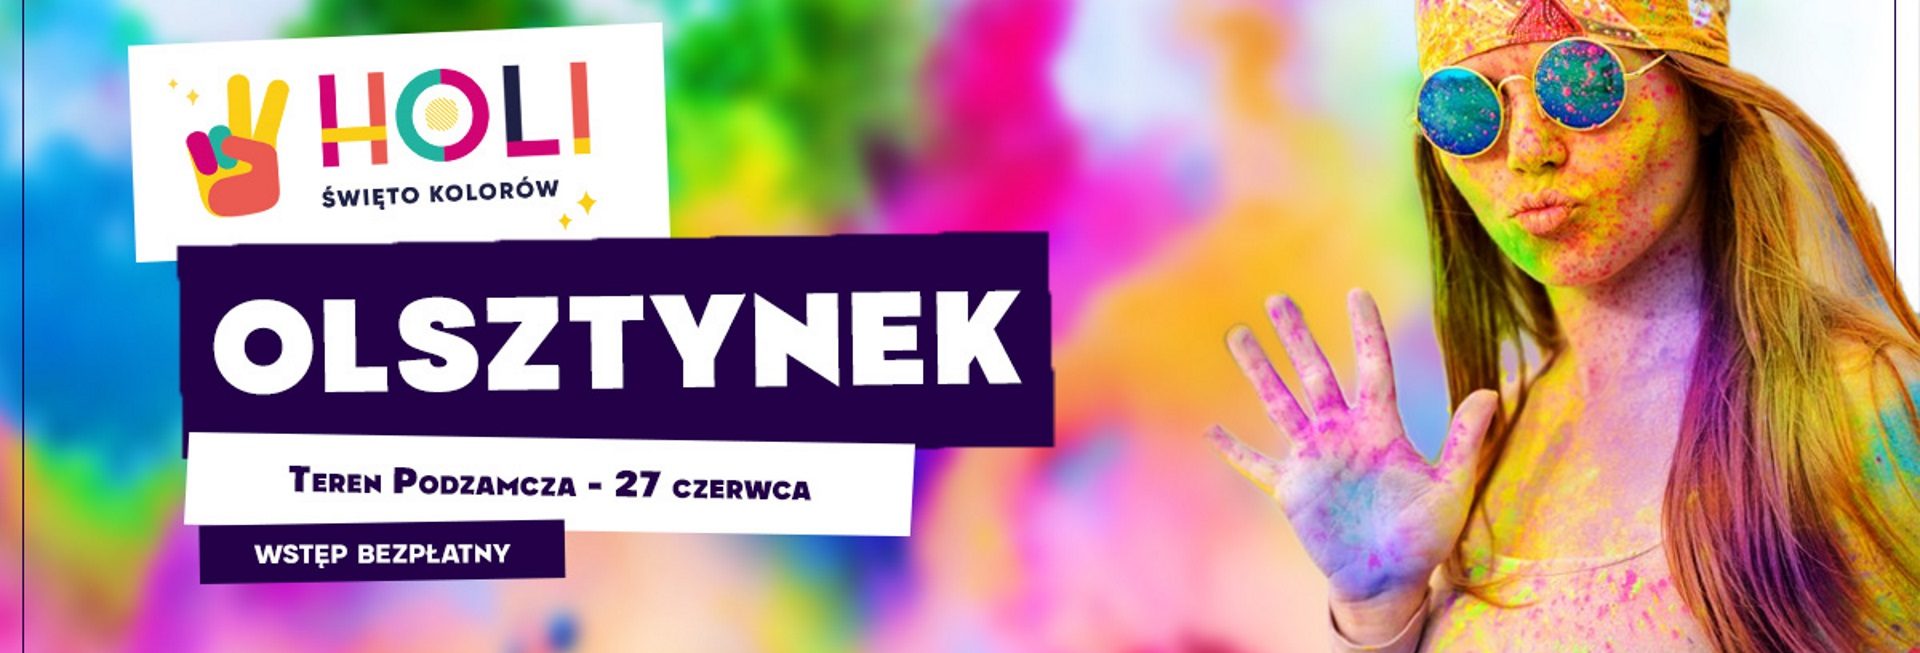 Plakat graficzny zapraszający do Olsztynka na imprezę Holi Święto Kolorów – Olsztynek 2021. Na plakacie widzimy dziewczynę - uczestniczkę imprezy całą ubrudzoną w kolorowym proszku.  